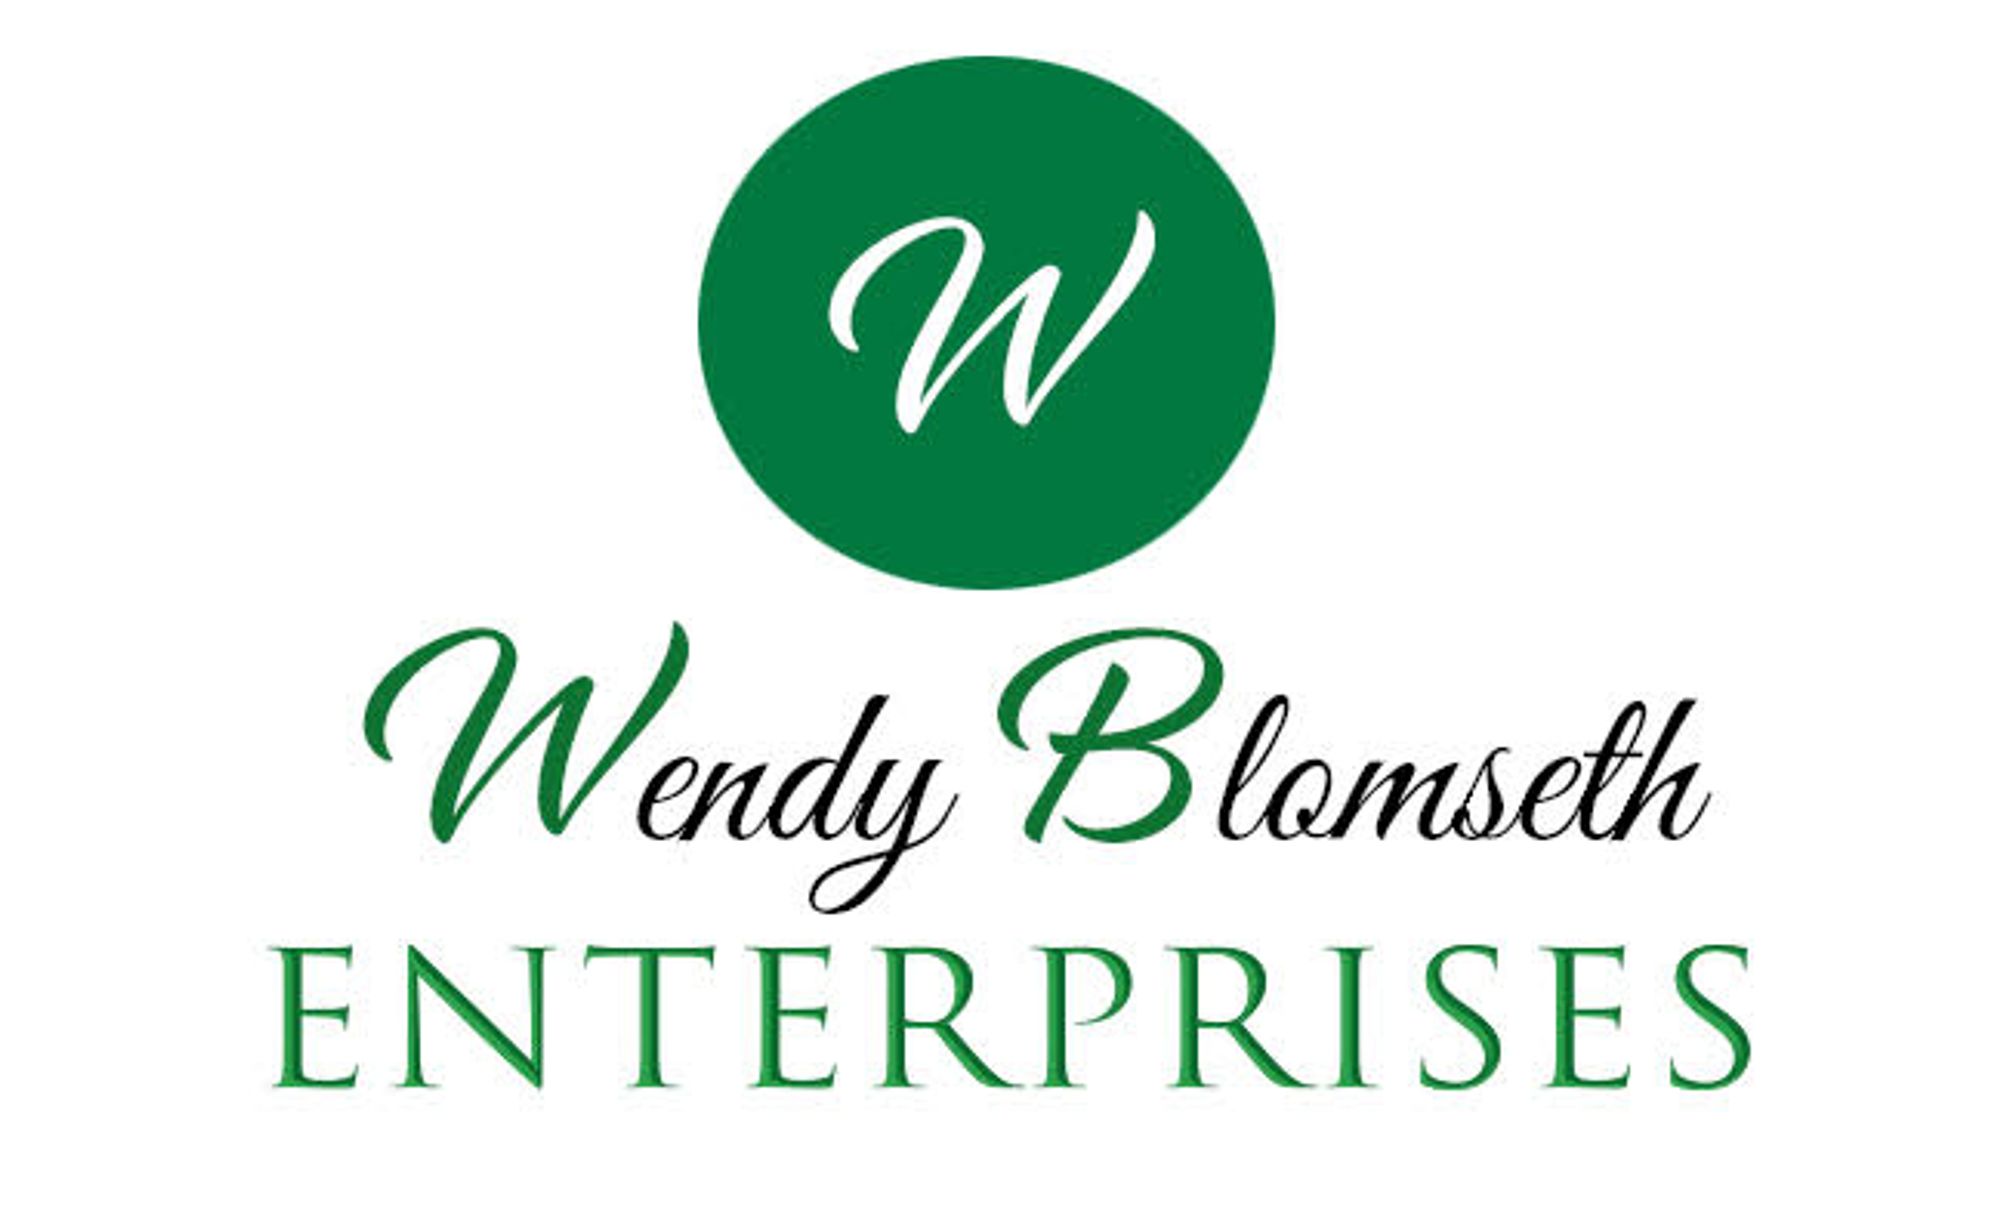 Wendy Blomseth Enterprises